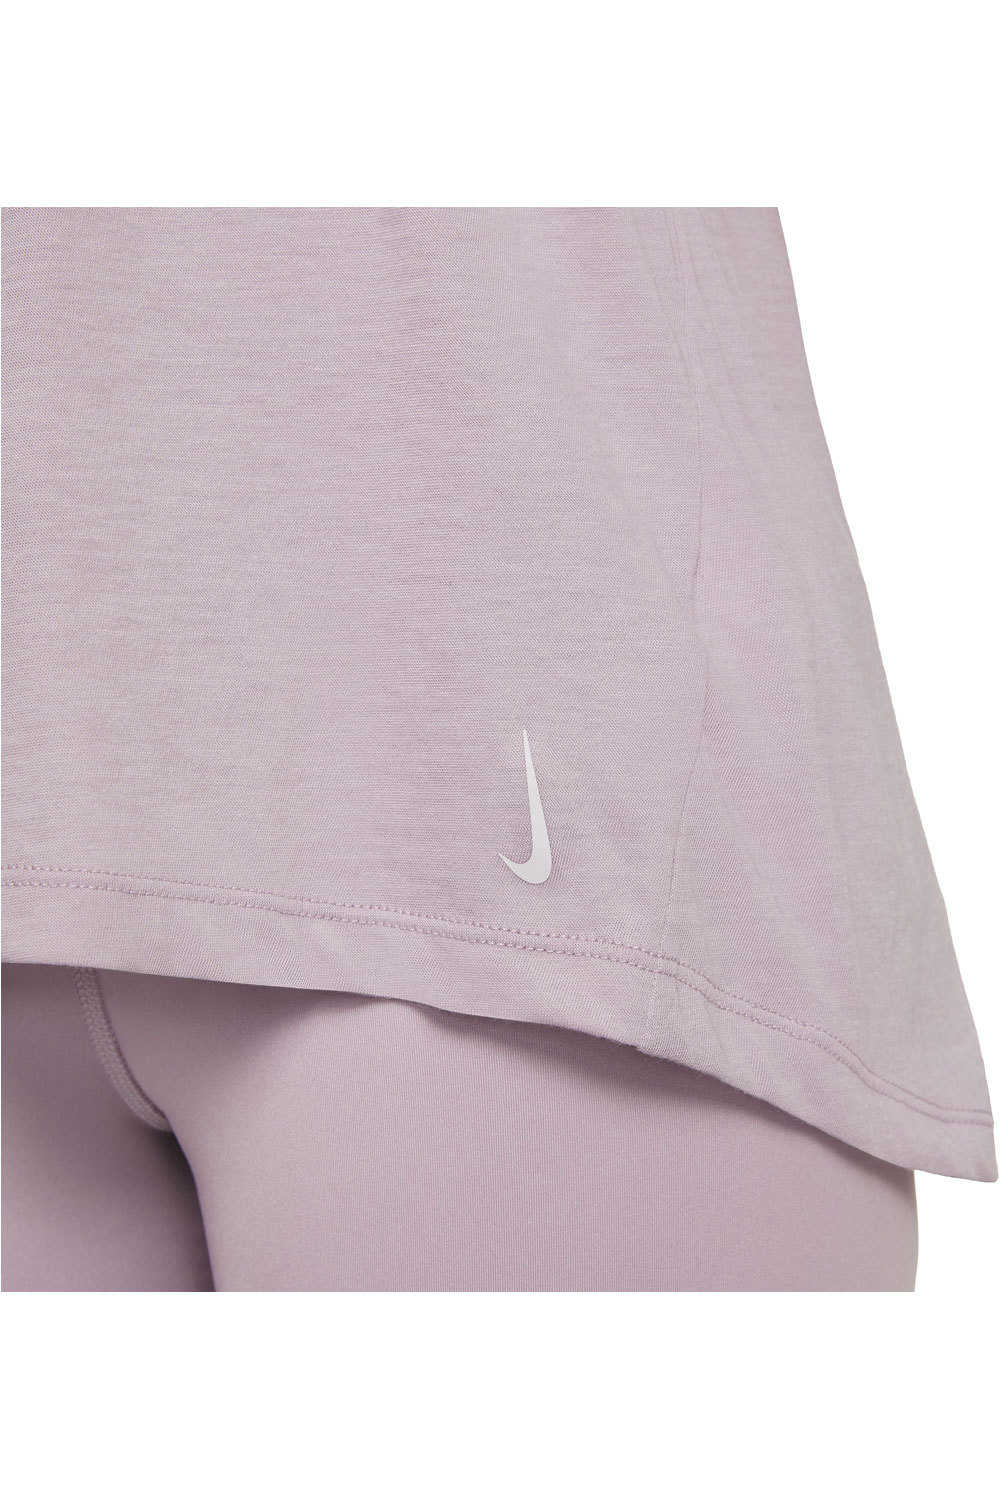 Nike Camiseta Tirantes Yoga W NY DF TANK NVLTY vista trasera